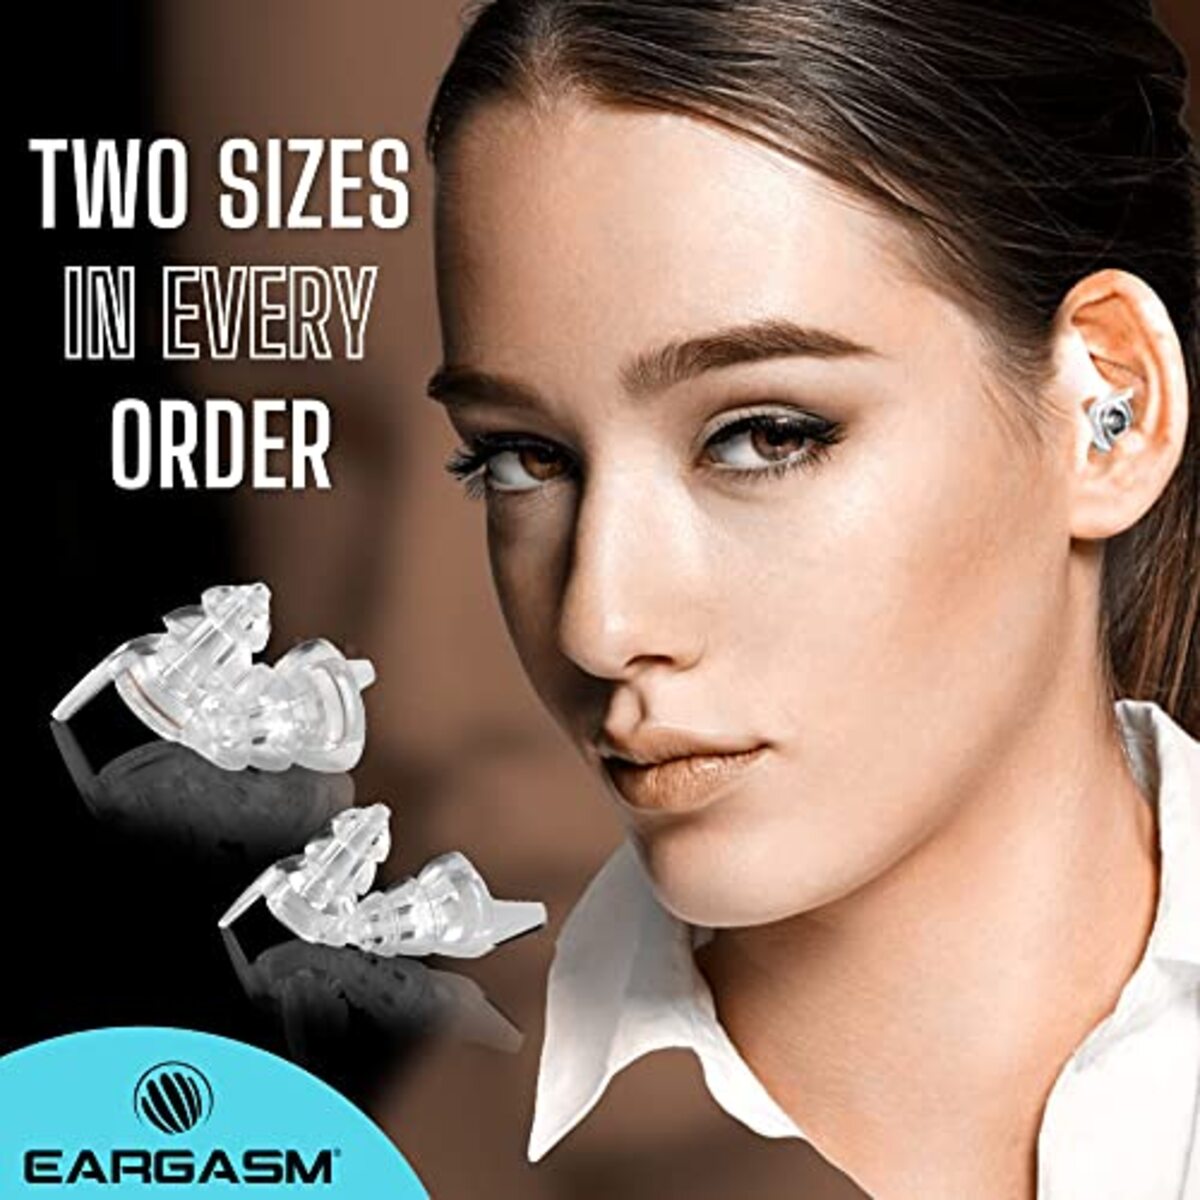 EARGASM HIGH FIDELITY EARPLUGS SMALLER EARS OR STANDARD SIZE TRANS –  DA HEALTH